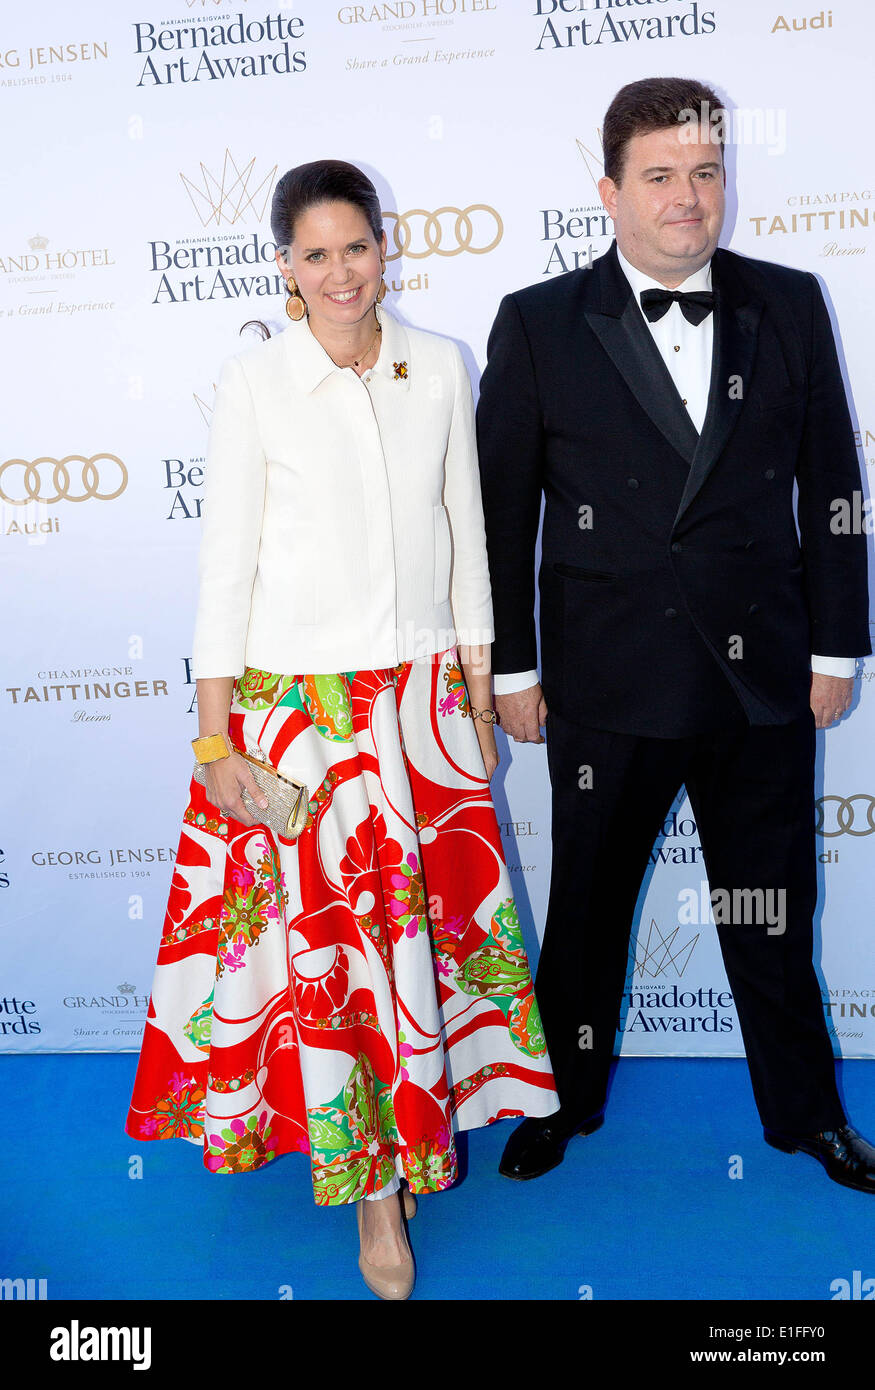 Grand Duke George Mikhailovich of Russia and Rebecca Battarini arrive for the Bernadotte Art Awards 2014 at the Grand Hotel in Stockholm, 02 June 2014. Photo: Albert Nieboer/ /dpa -NO WIRE SERVICE- Stock Photo